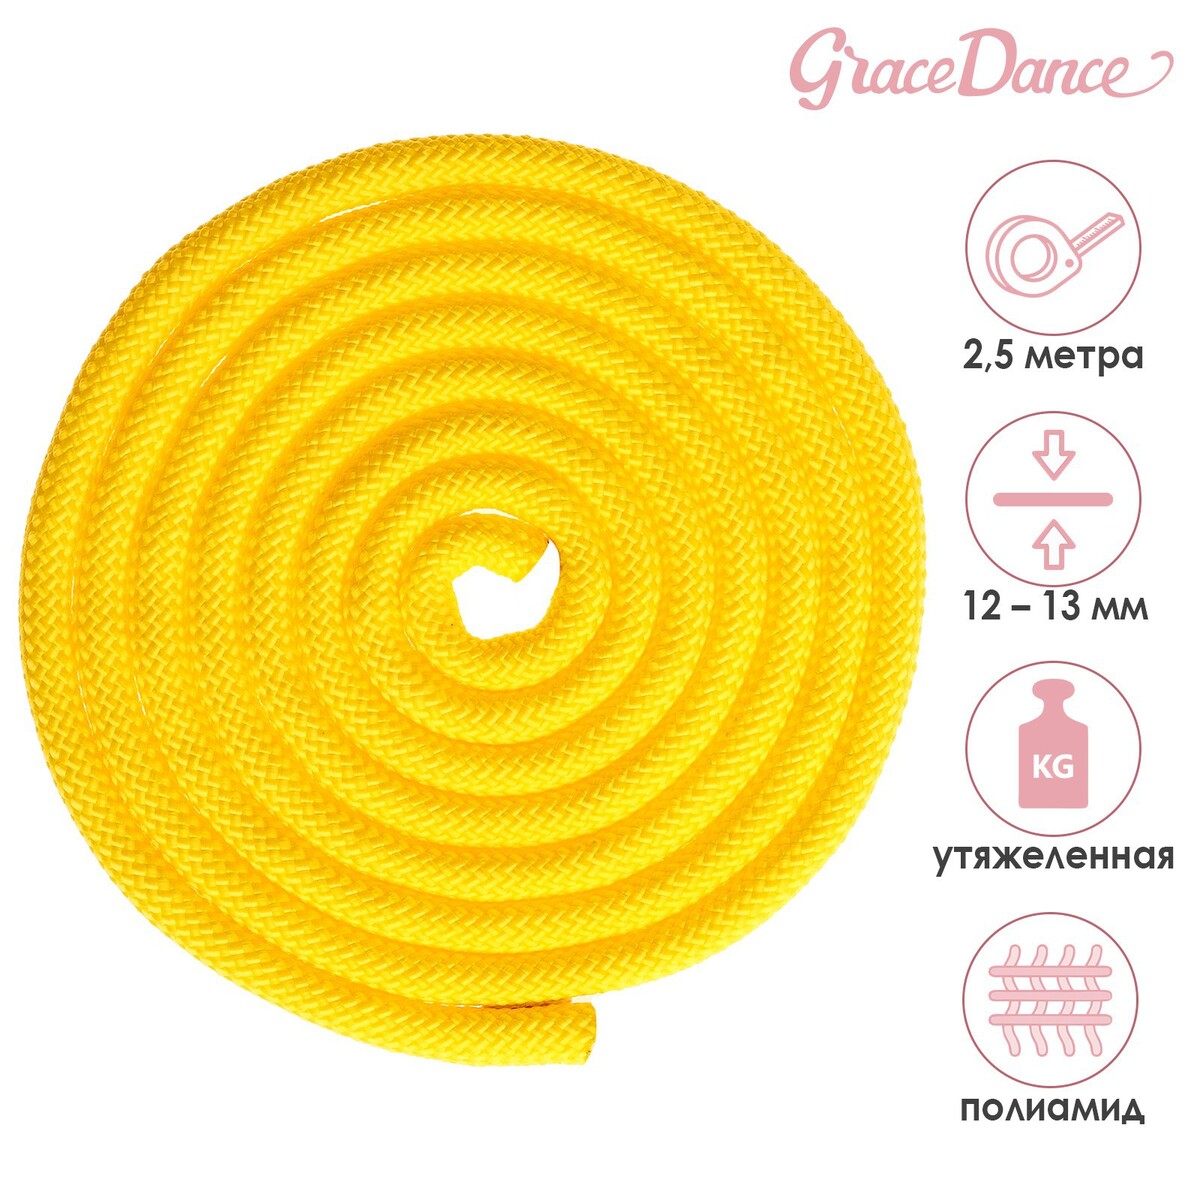 Скакалка для художественной гимнастики утяжеленная grace dance, 2,5 м, цвет желтый скакалка для художественной гимнастики утяжеленная grace dance 3 м желтый